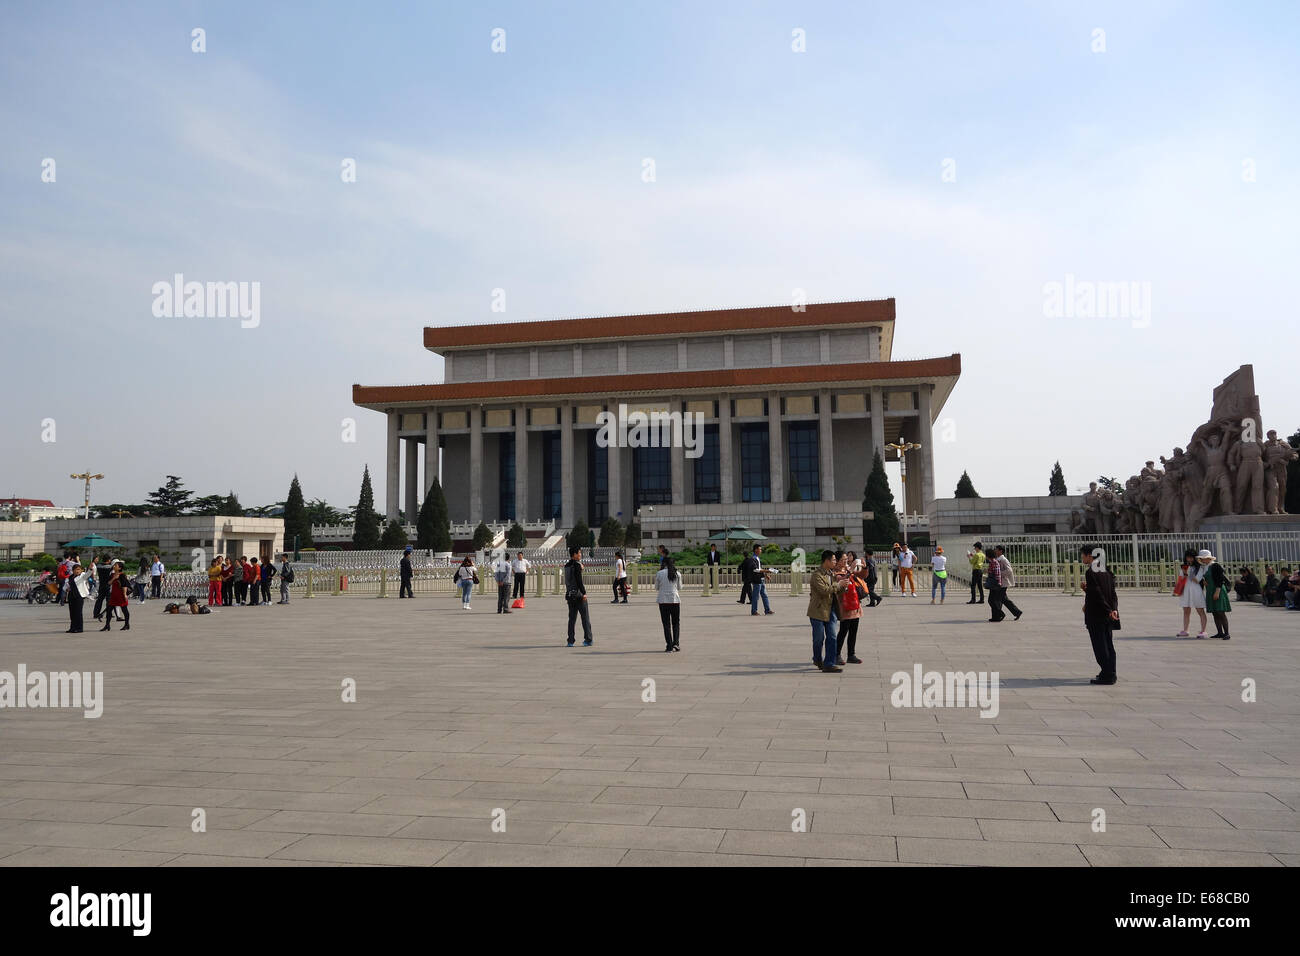 Mausolée de Mao Zedong sur la place Tiananmen à Beijing Chine Banque D'Images